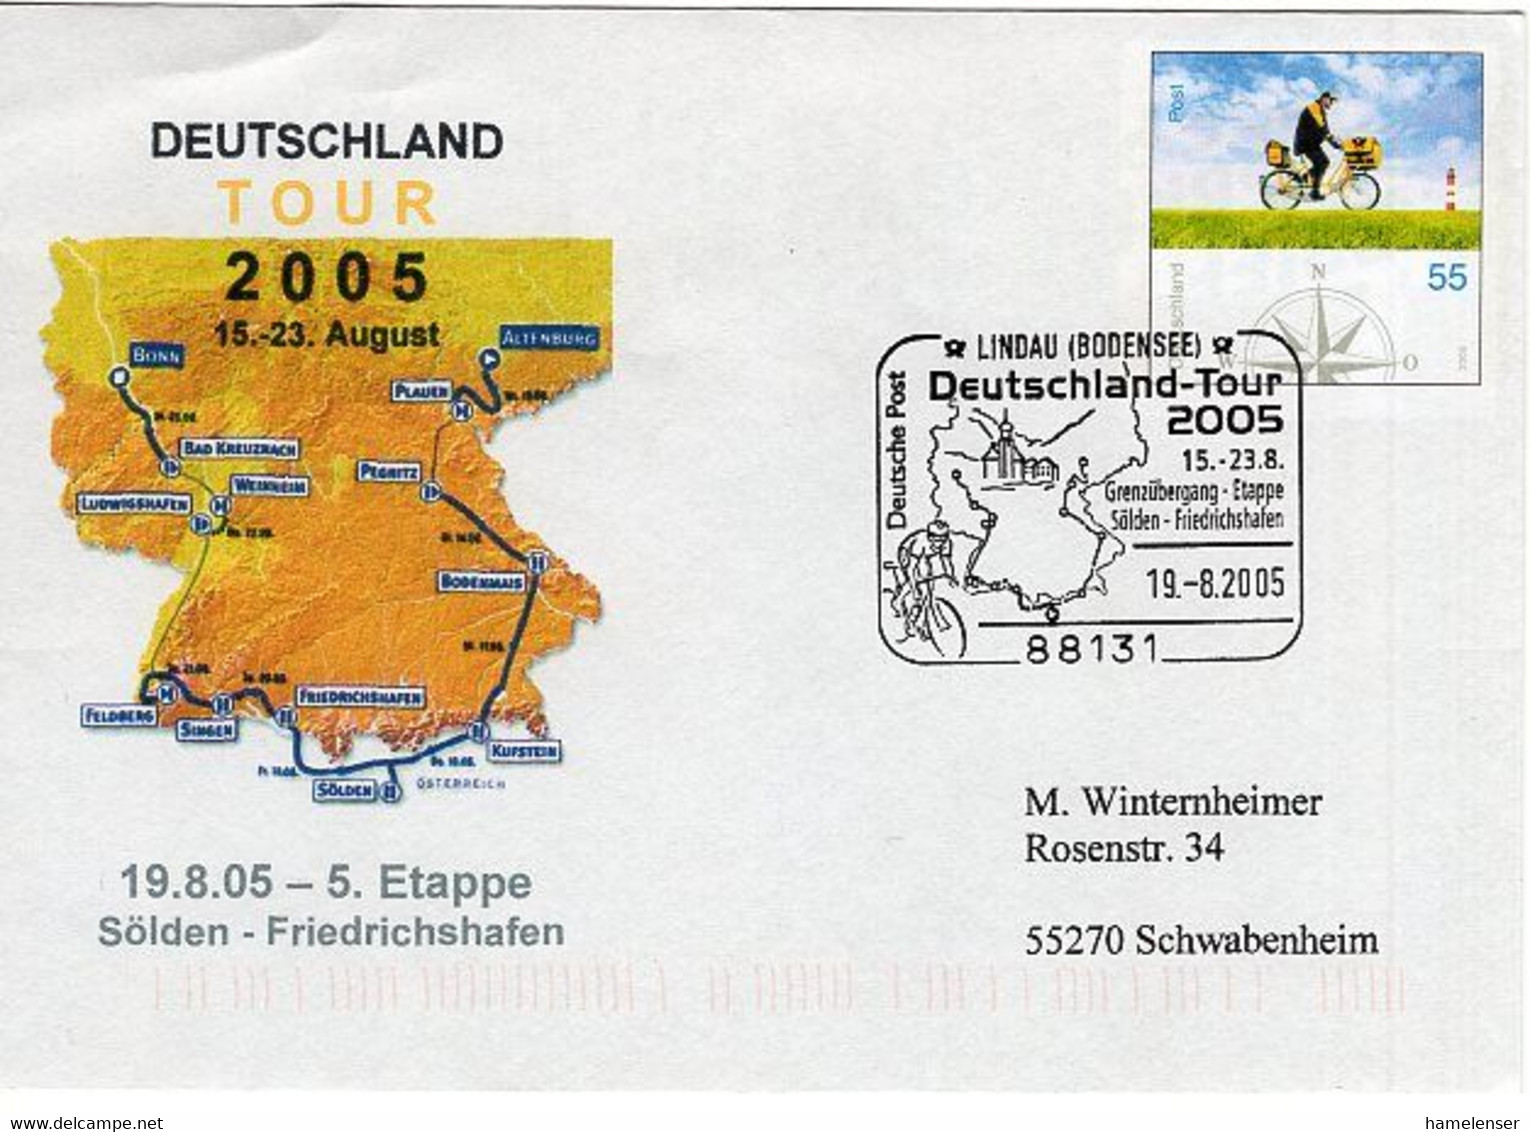 50550 - Bund - 2005 - 55c. Plusbrief "Brieftraeger" SoStpl. LINDAU - DEUTSCHLAND-TOUR 2005 -> Schwabenheim - Radsport